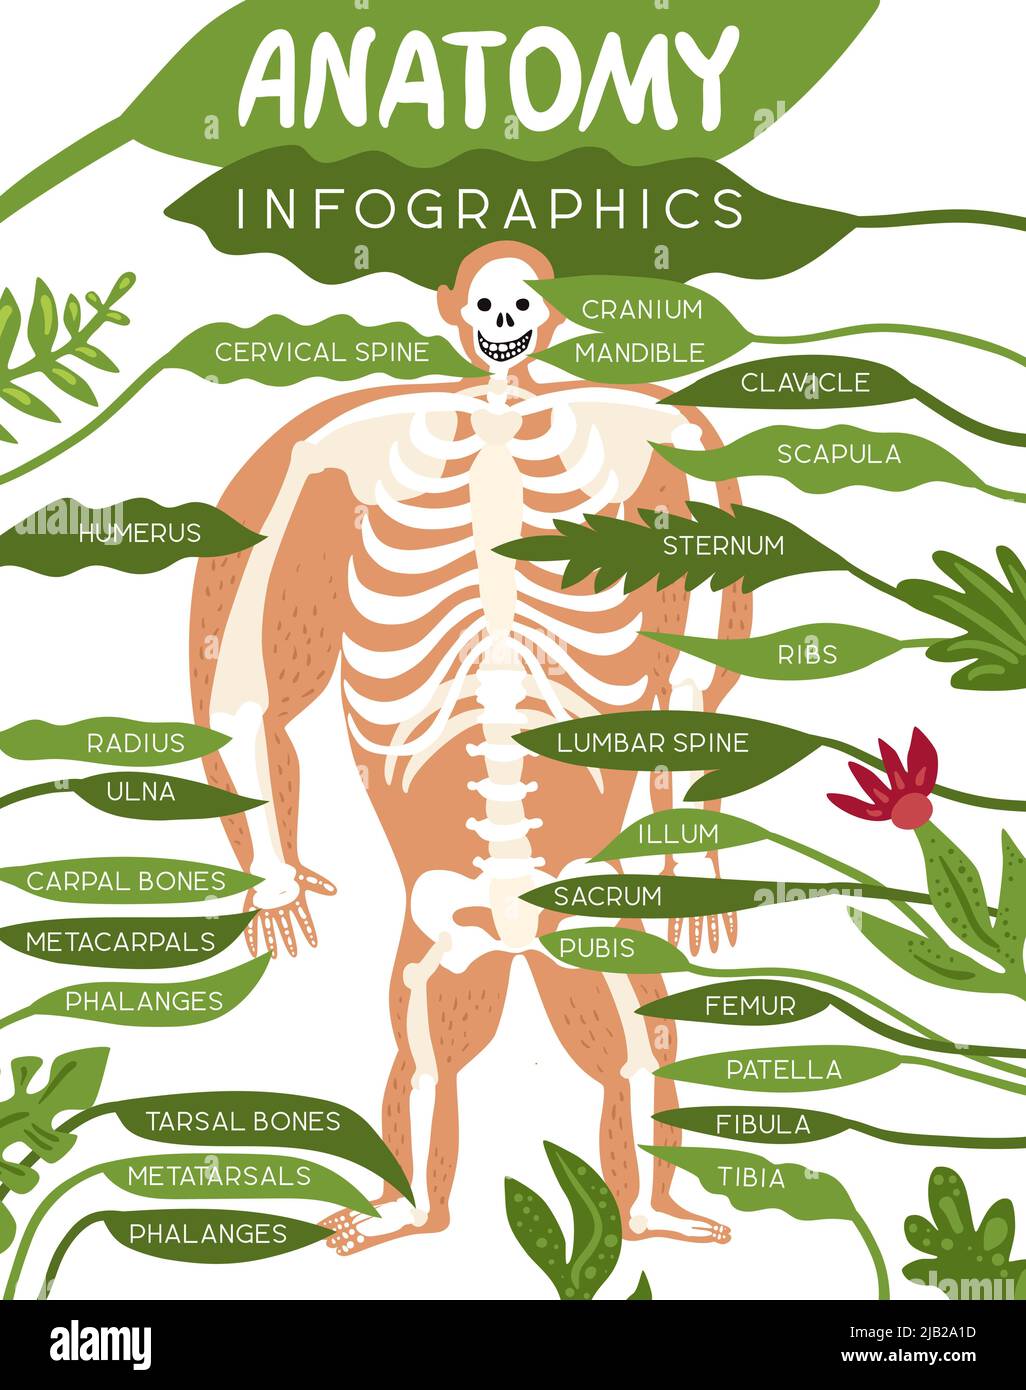 Layout infografico dell'anatomia scheletrica con immagine del corpo umano e descrizione dettagliata delle parti componenti dell'illustrazione vettoriale piatta del sistema scheletrico Illustrazione Vettoriale